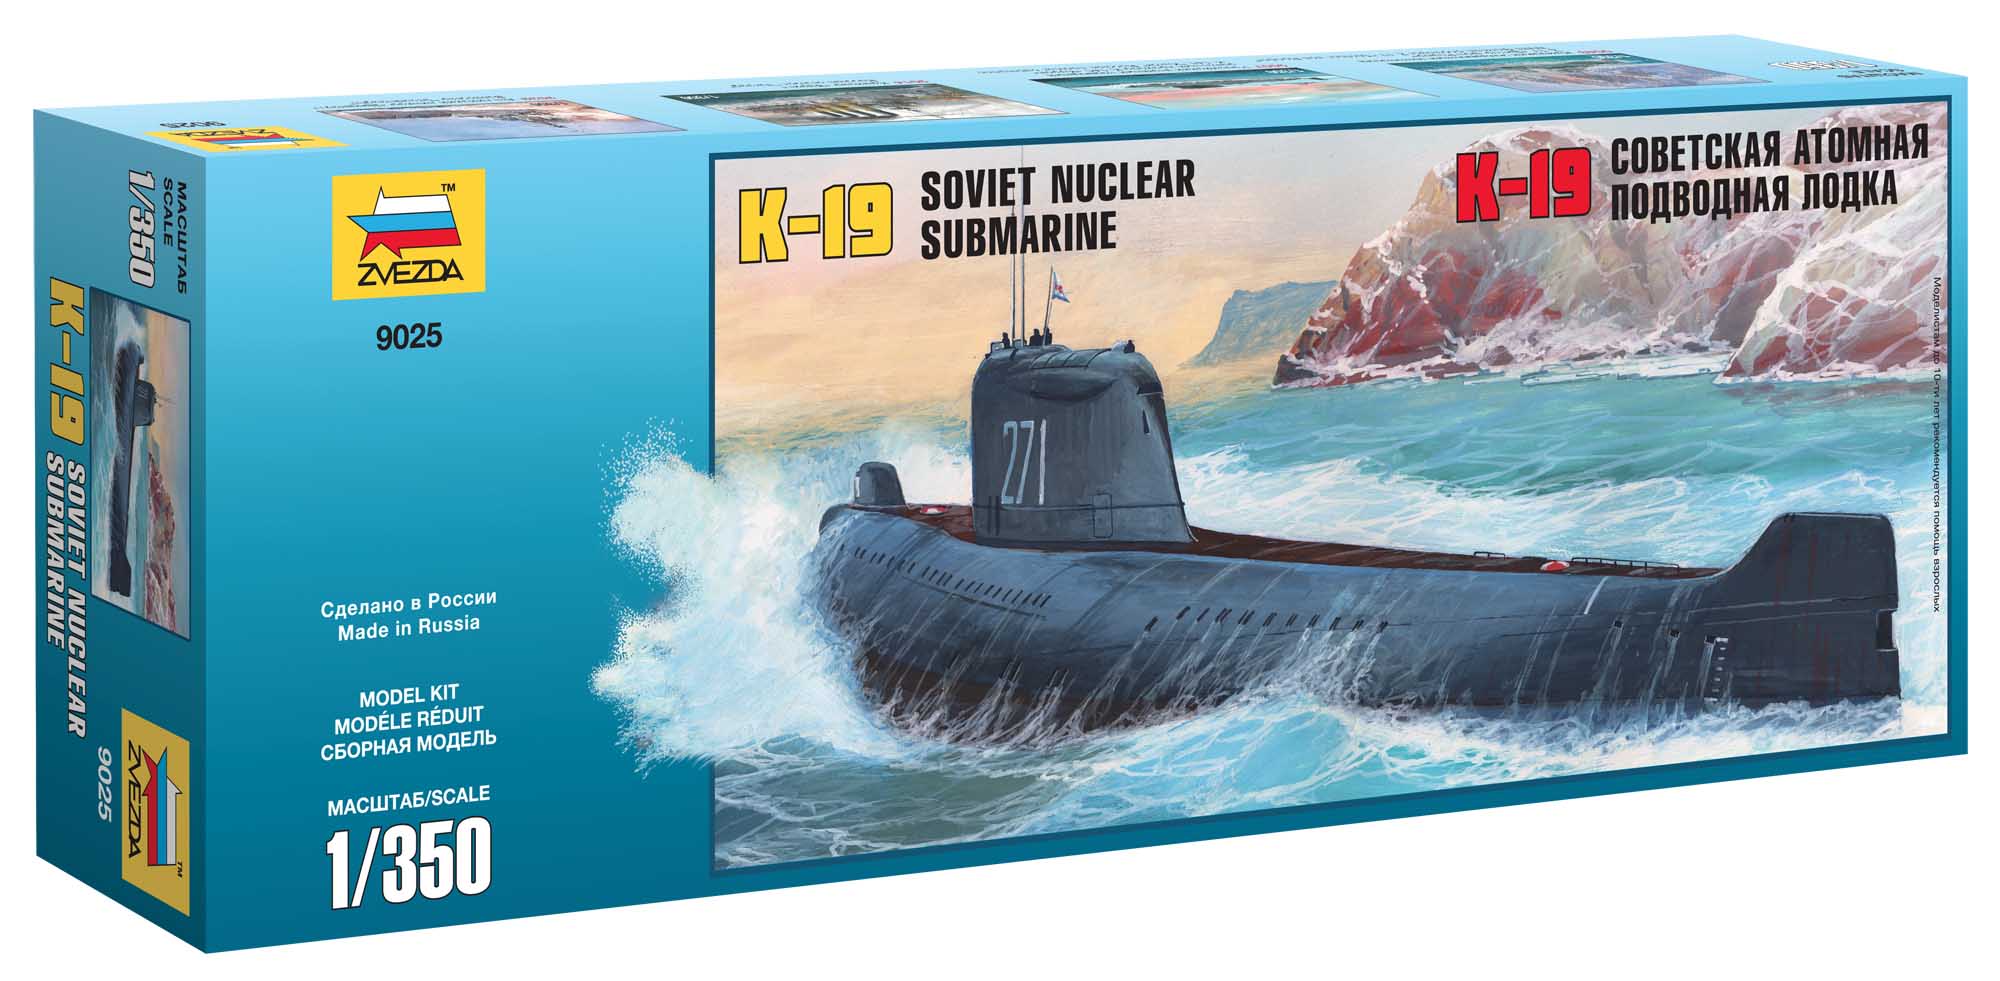 Zvezda Model Kit ponorka 9025 - K-19 Soviet Nuclear Submarine "Hotel" Class (1:350)